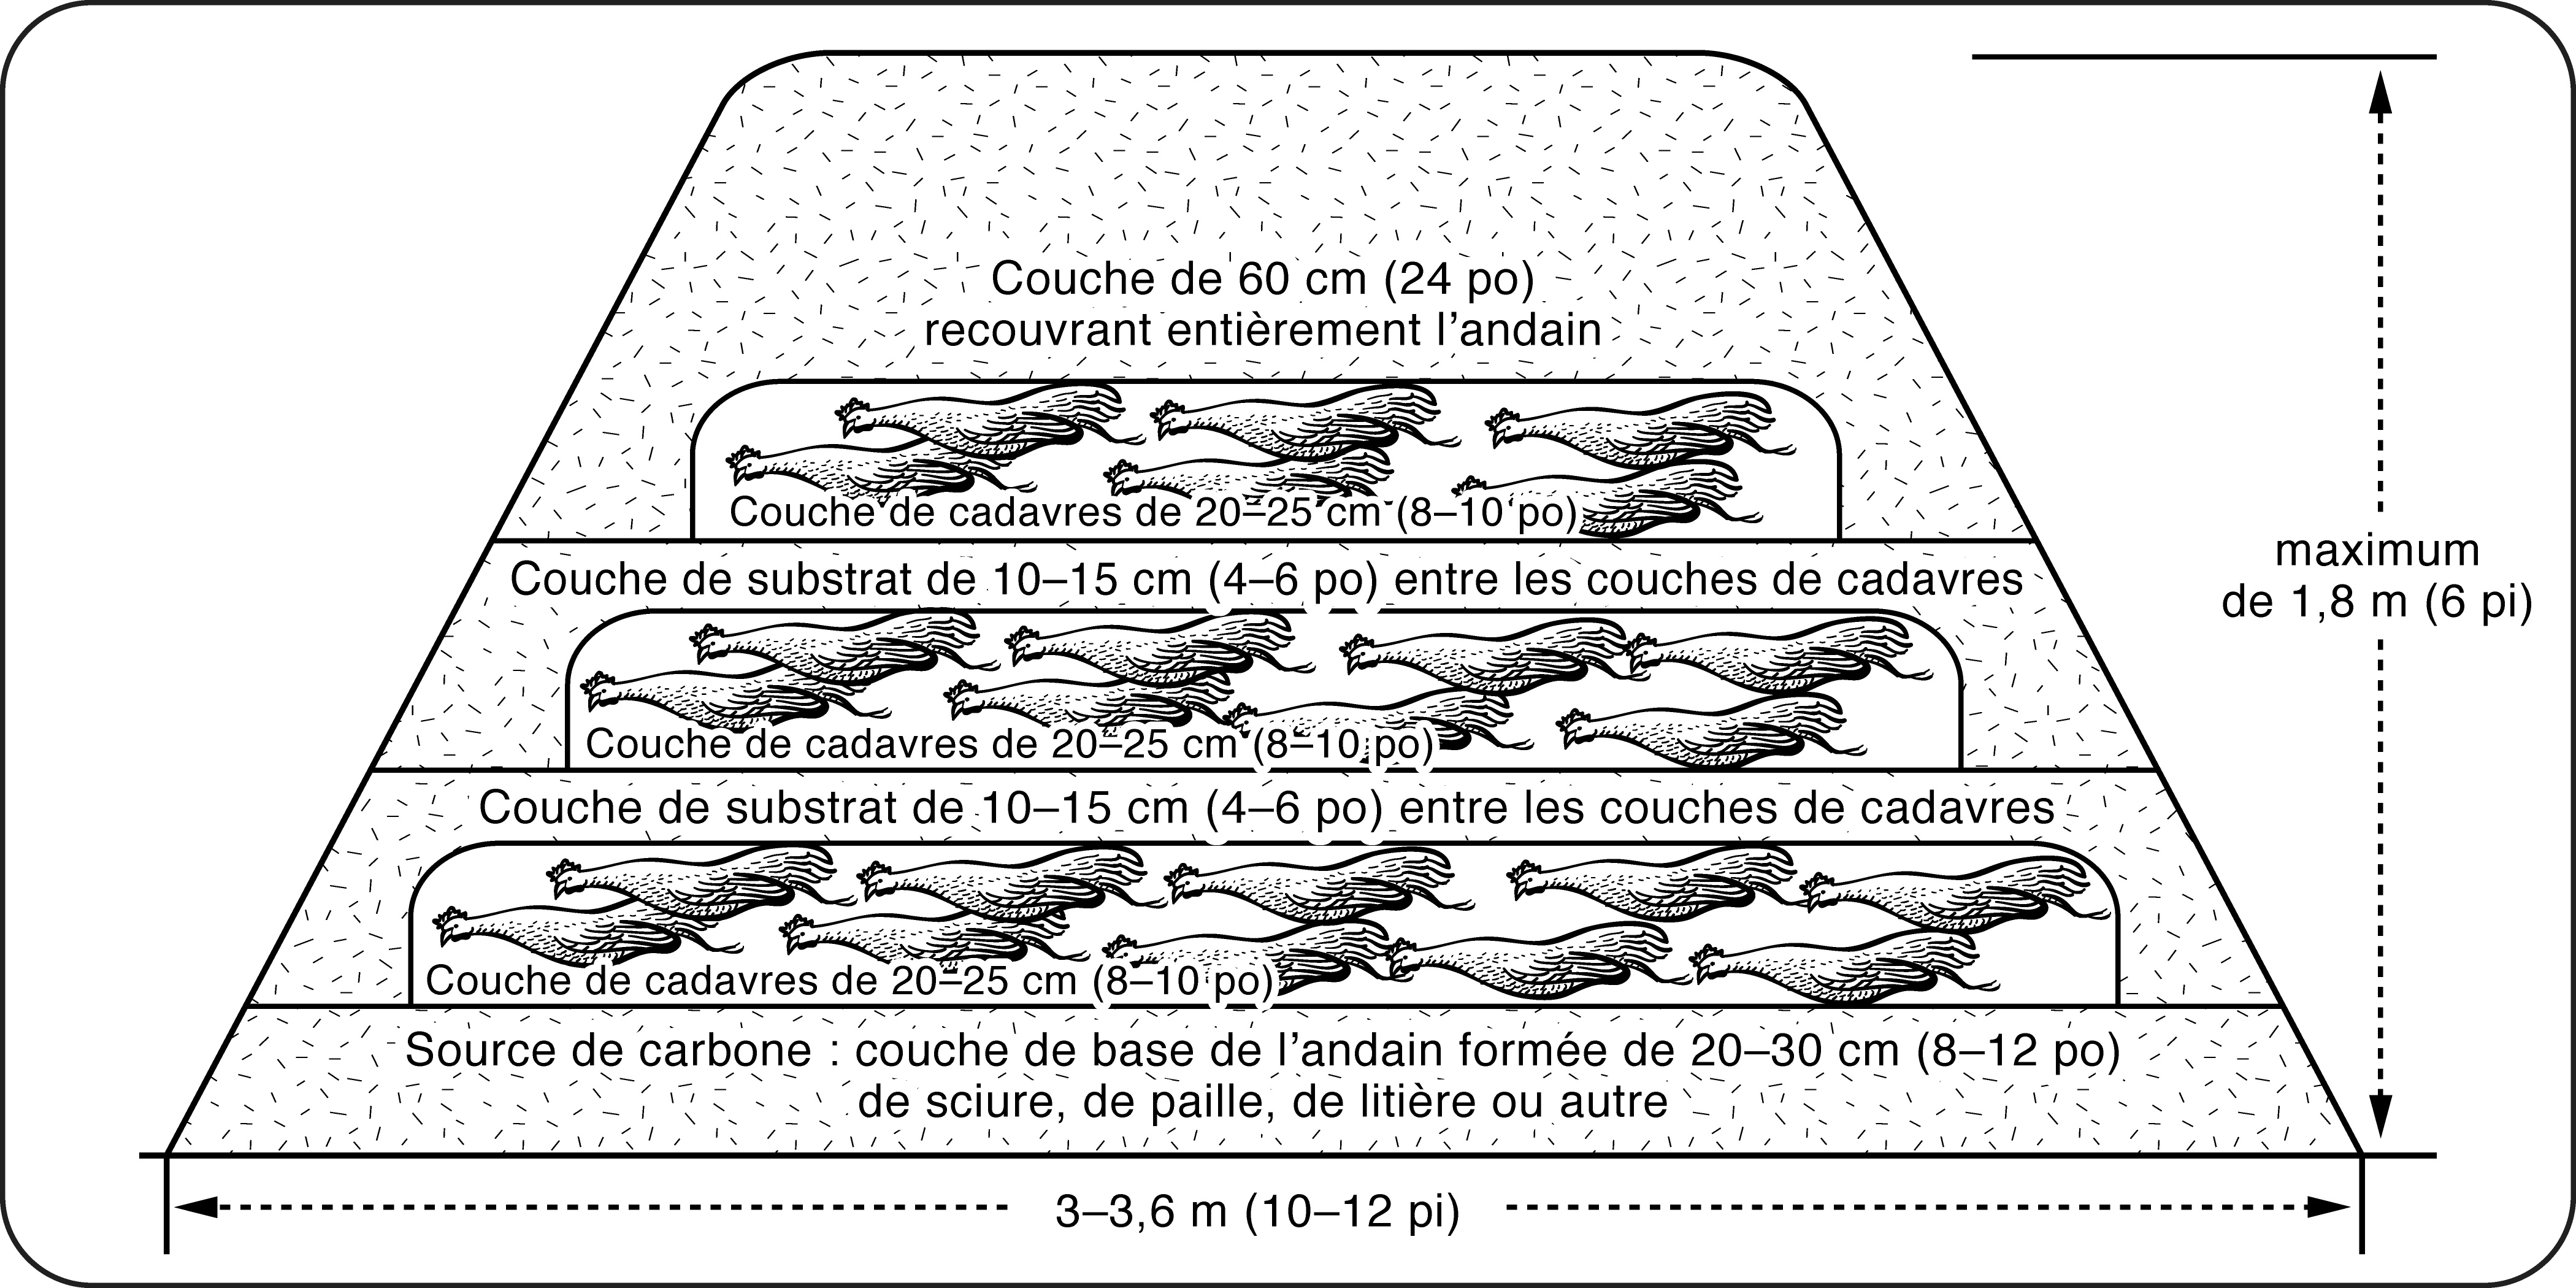 Schéma de la coupe transversale d’un andain de compostage de cadavres de volaille formé par la méthode multicouche. L’illustration montre les couches successives de substrat et de cadavres à l’intérieur de l’andain, ainsi que les dimensions approximatives de celui-ci.